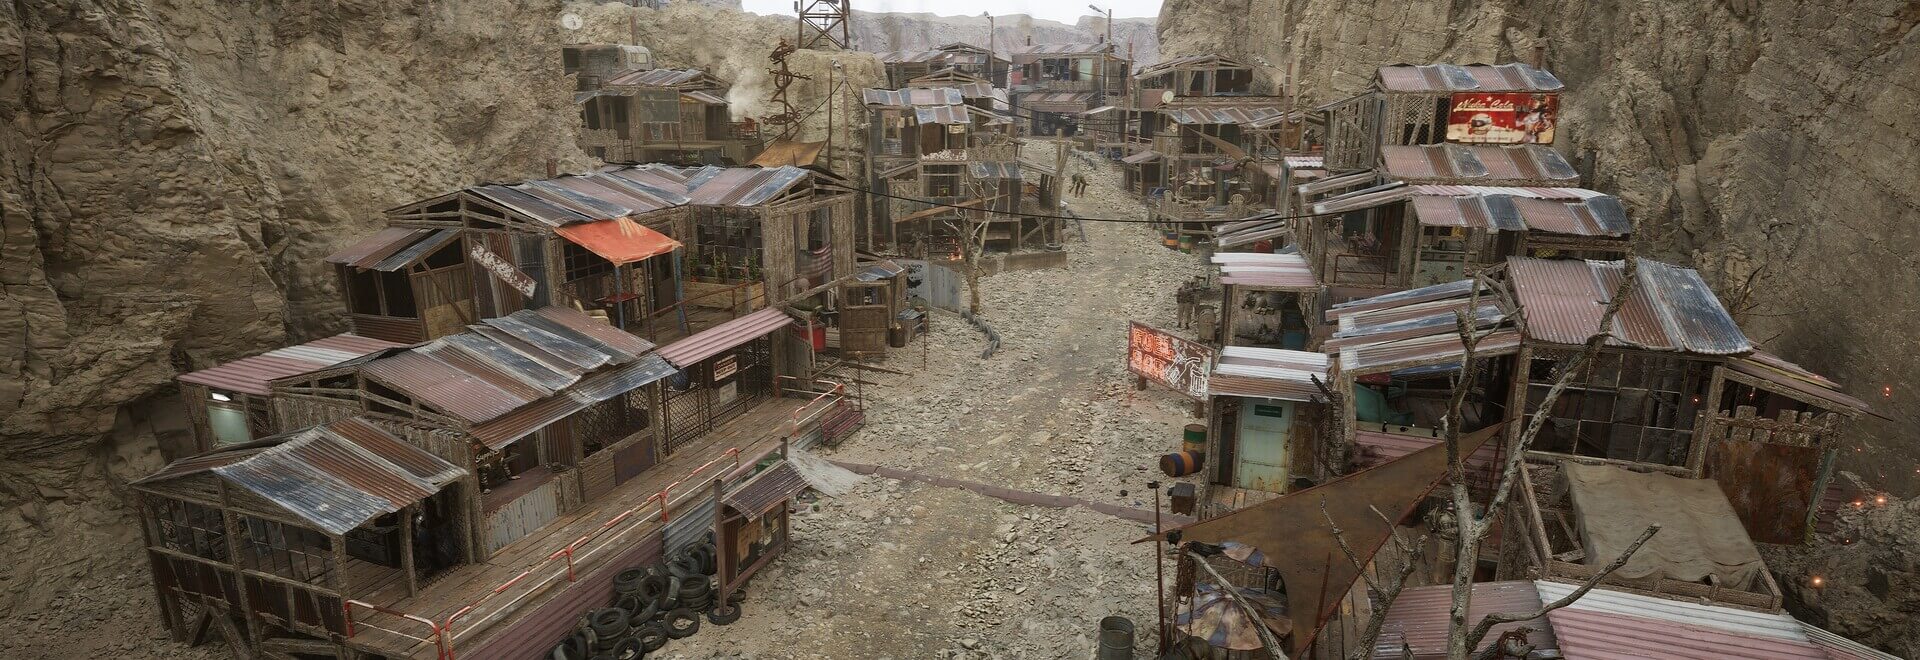 Fallout 4 спектакль айленд вы пока не можете использовать эту мастерскую фото 109